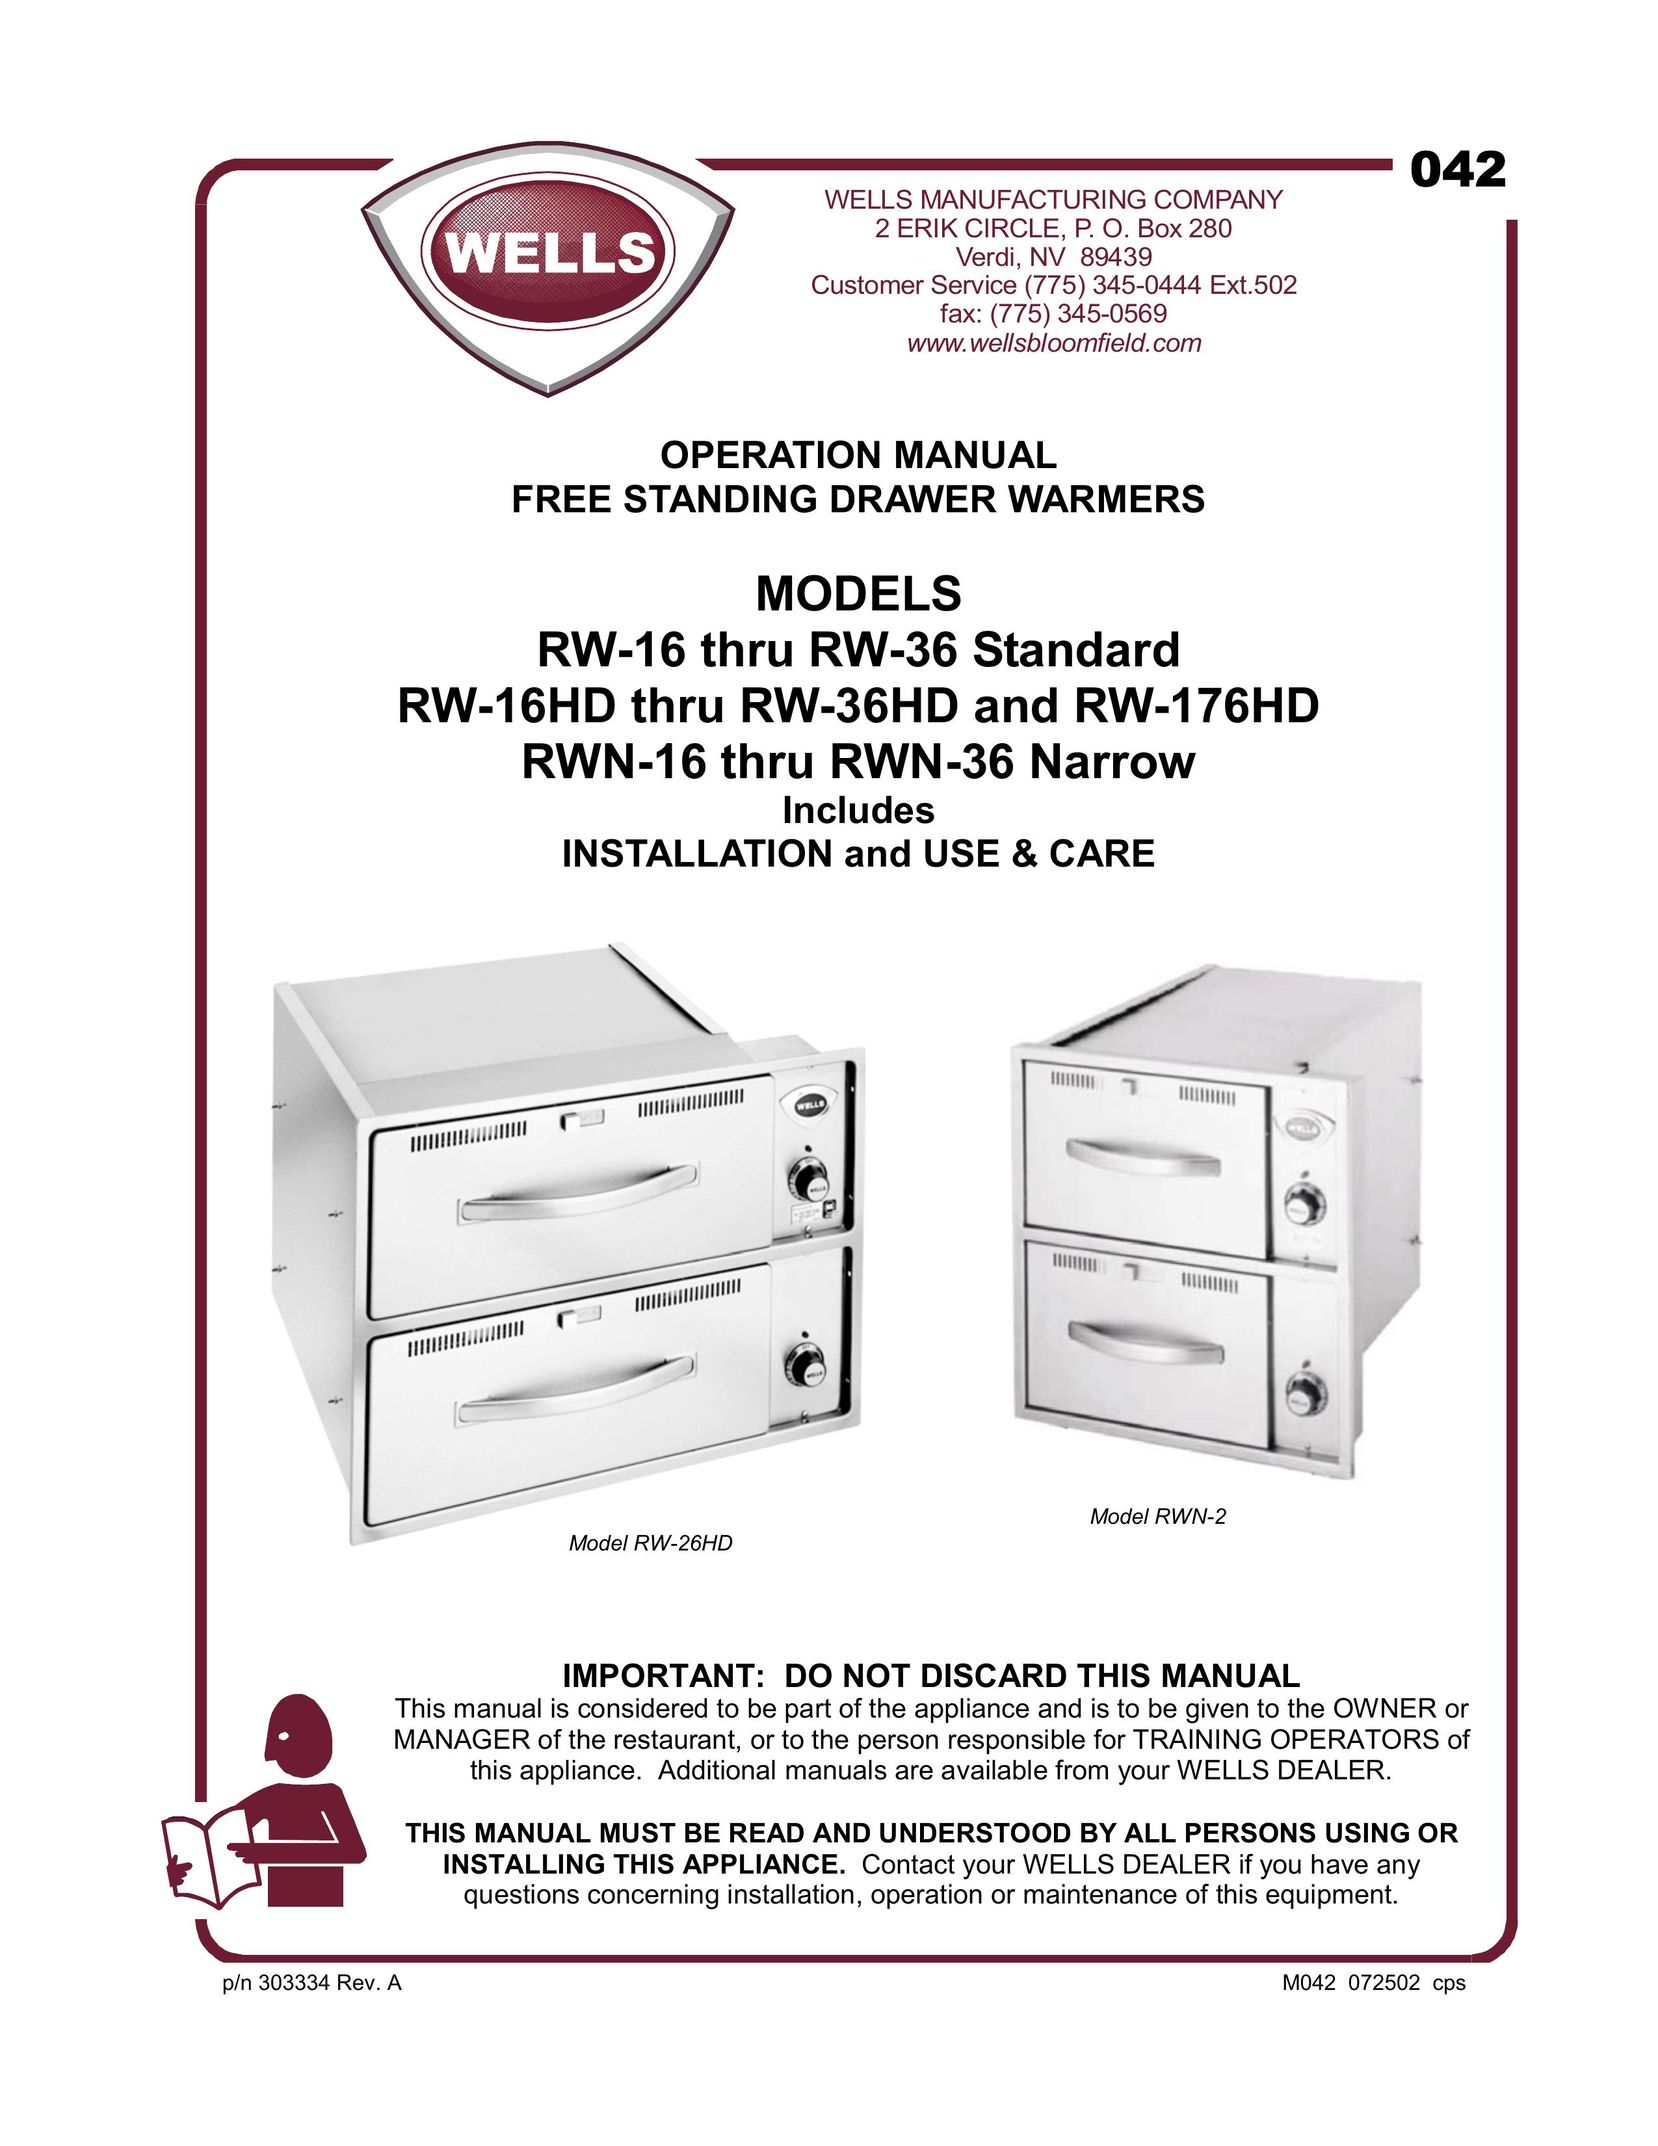 Wells RW-176HD Food Warmer User Manual